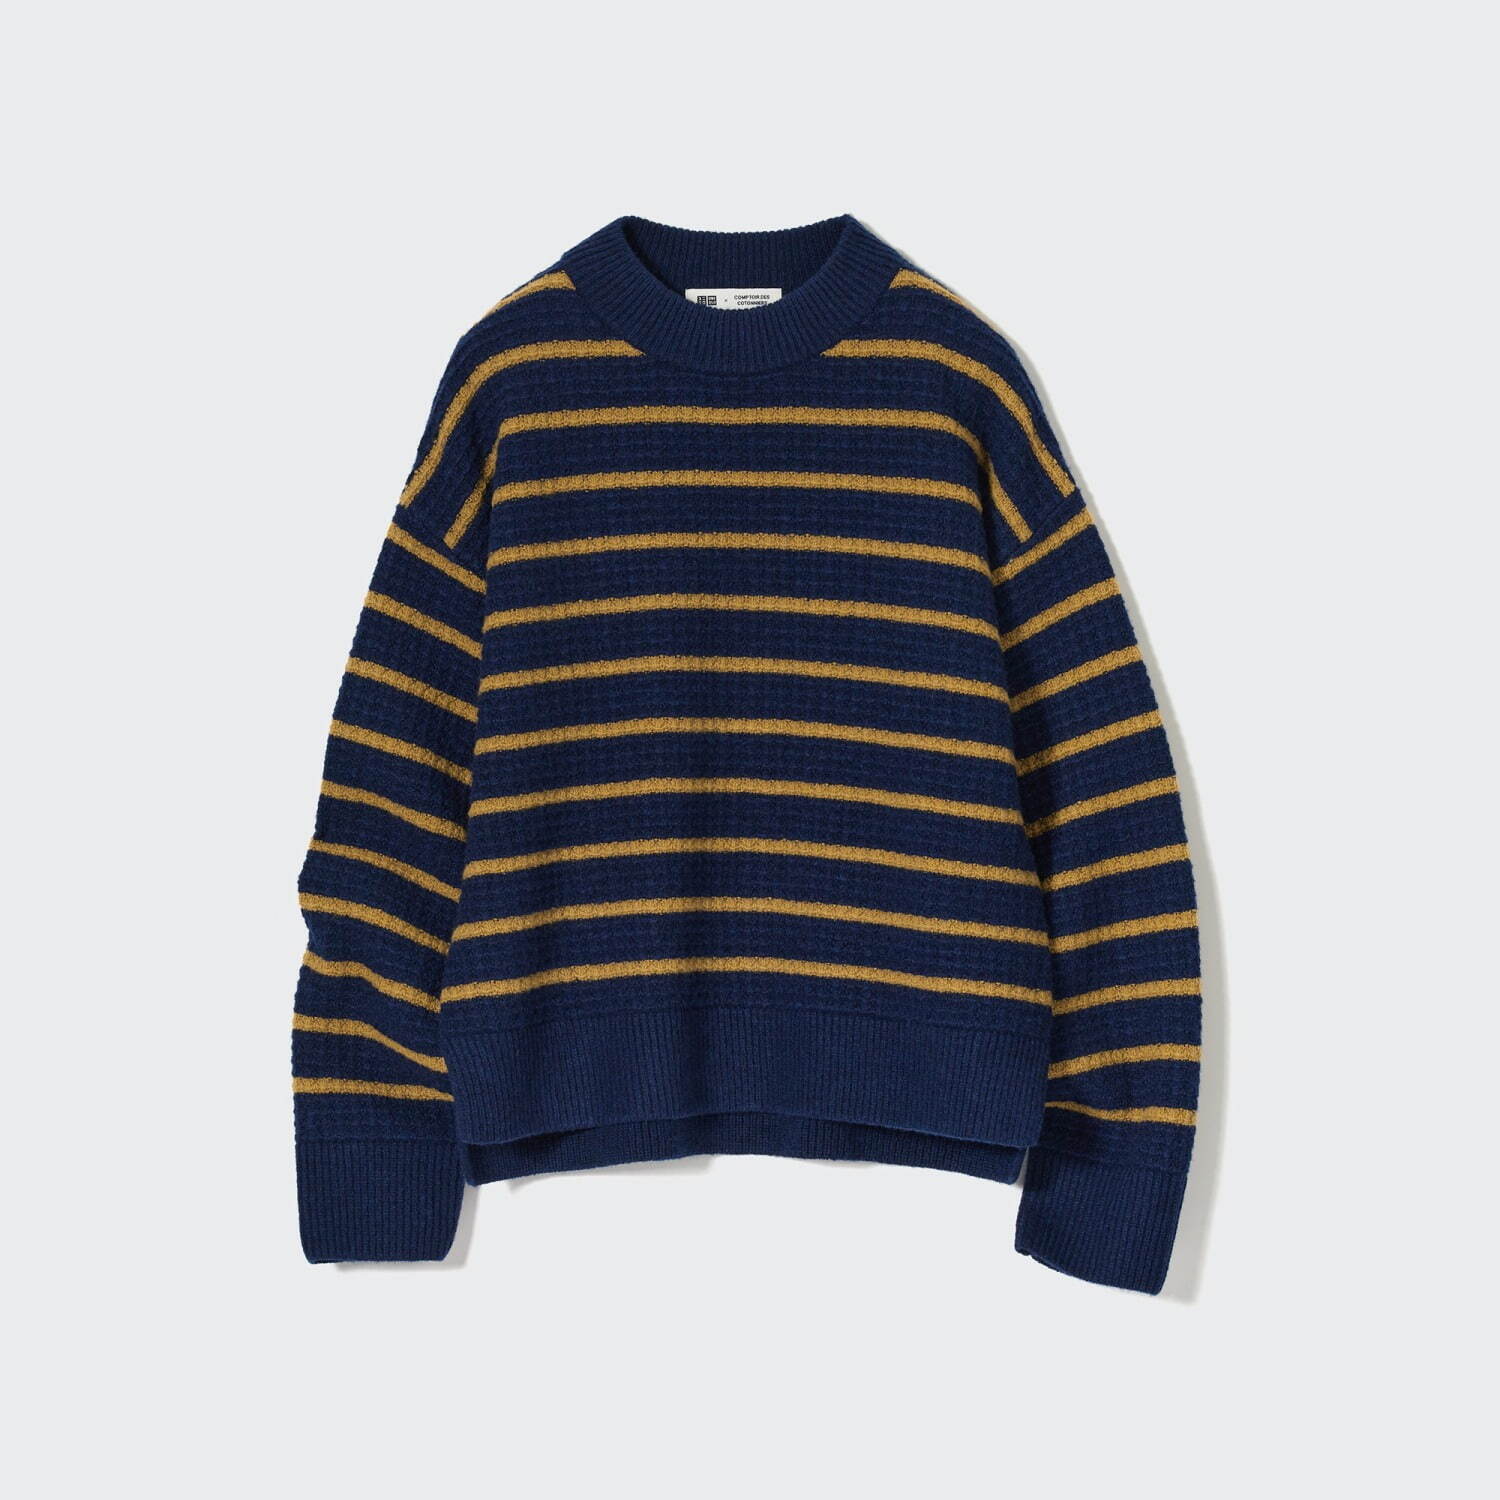 プレミアムラムボーダークルーネックセーター(長袖) 3,990円